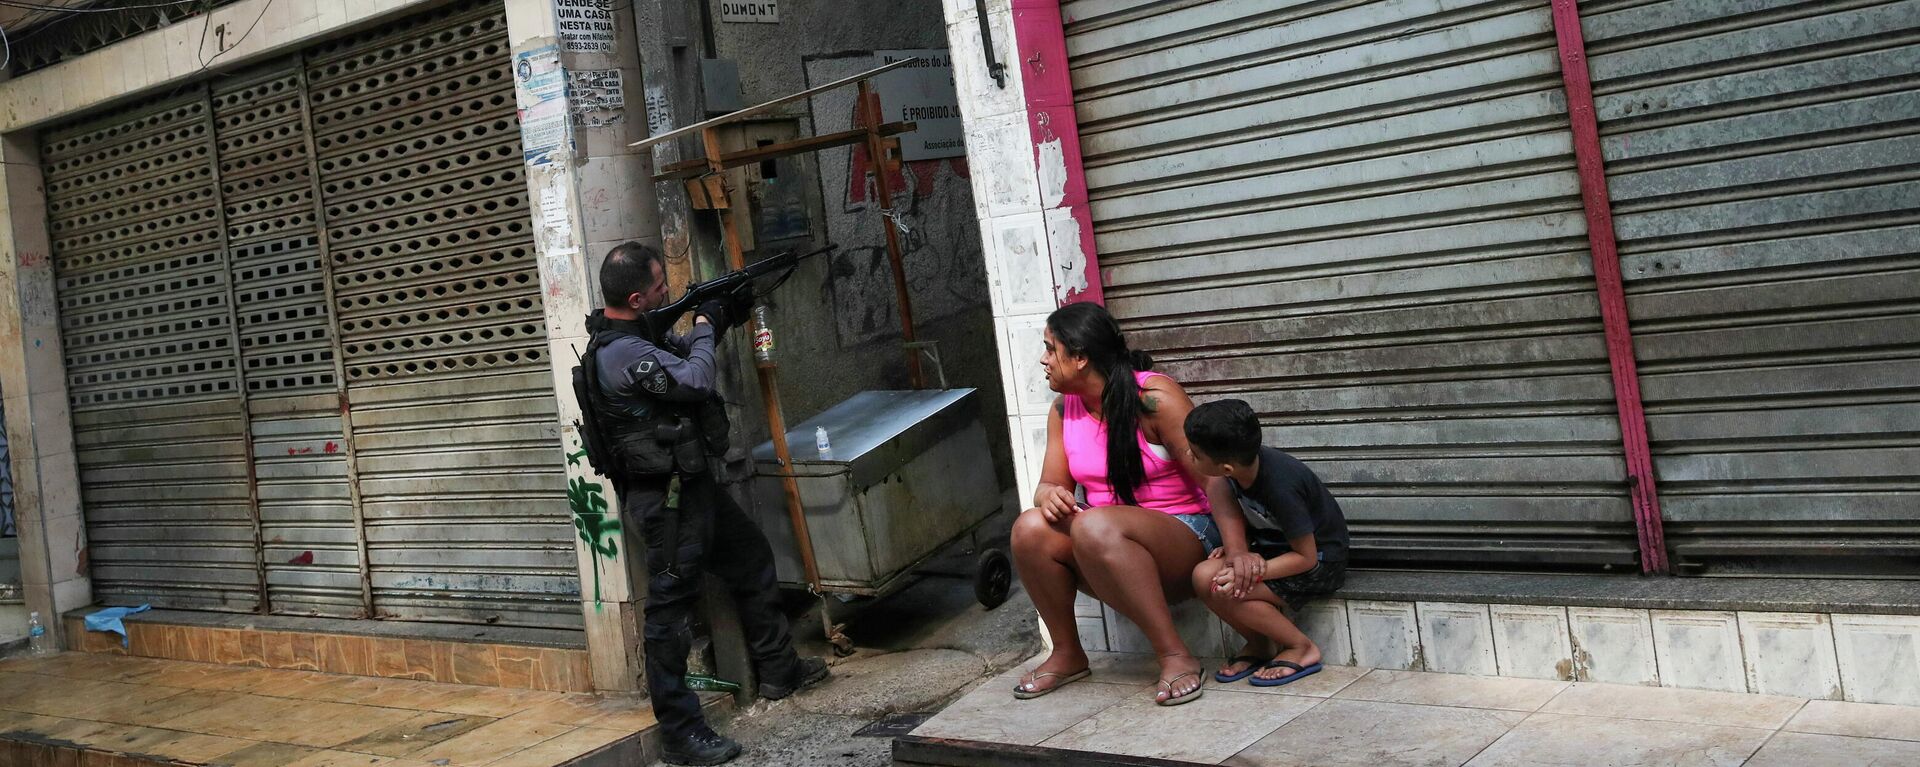 Agente de la Policía Civil de Río de Janeiro durante una operación en el barrio de Jacarezinho - Sputnik Mundo, 1920, 06.05.2021